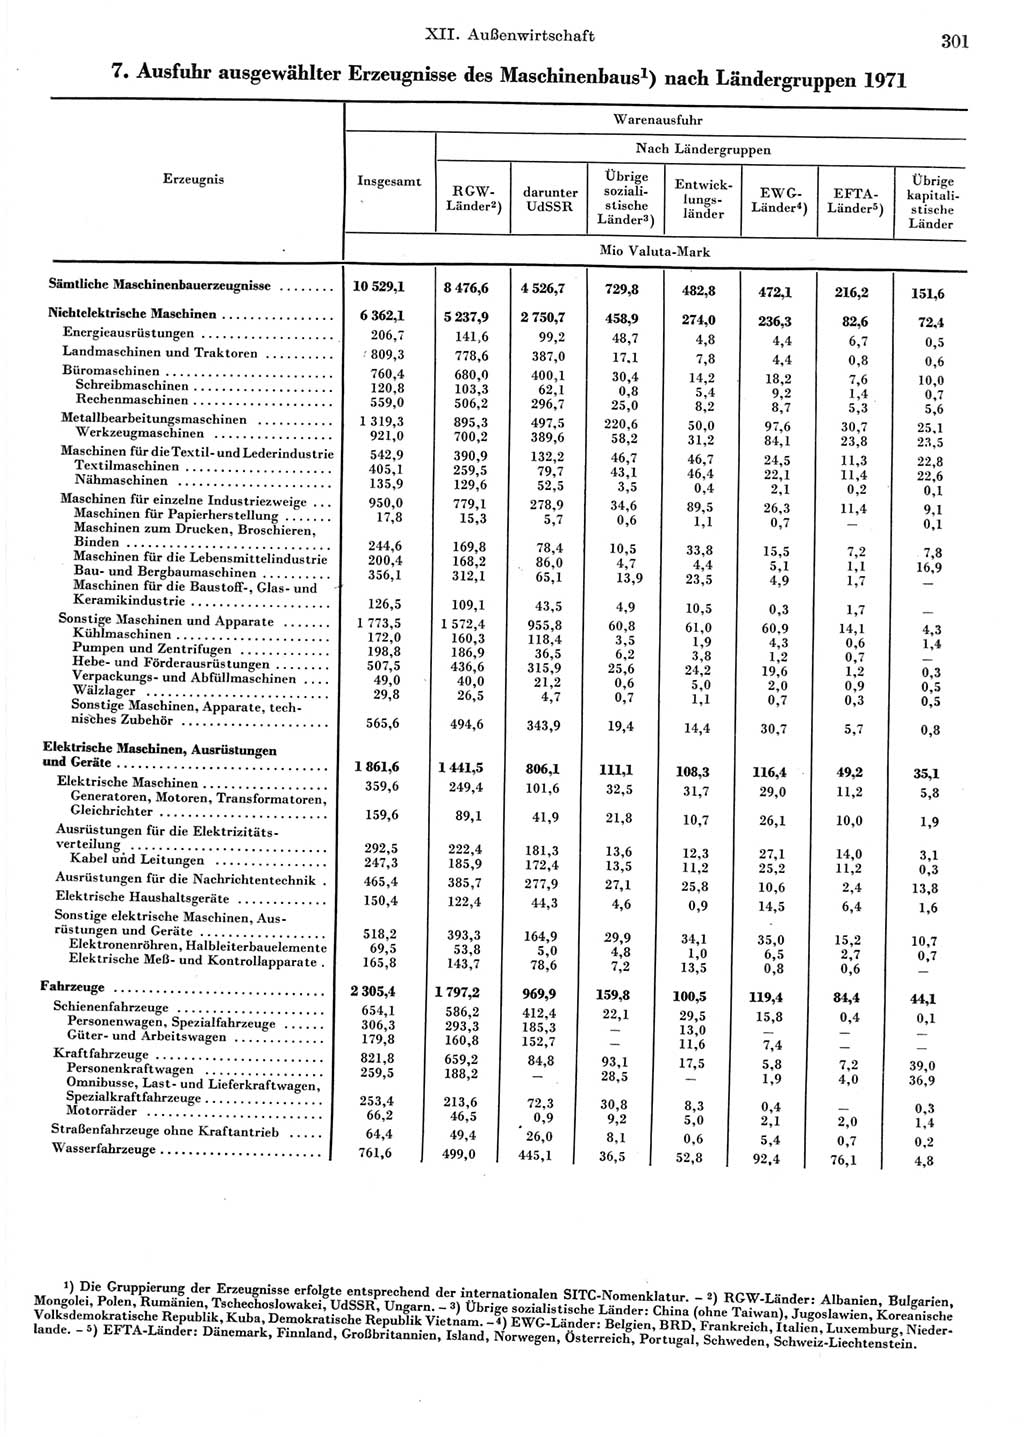 Statistisches Jahrbuch der Deutschen Demokratischen Republik (DDR) 1973, Seite 301 (Stat. Jb. DDR 1973, S. 301)